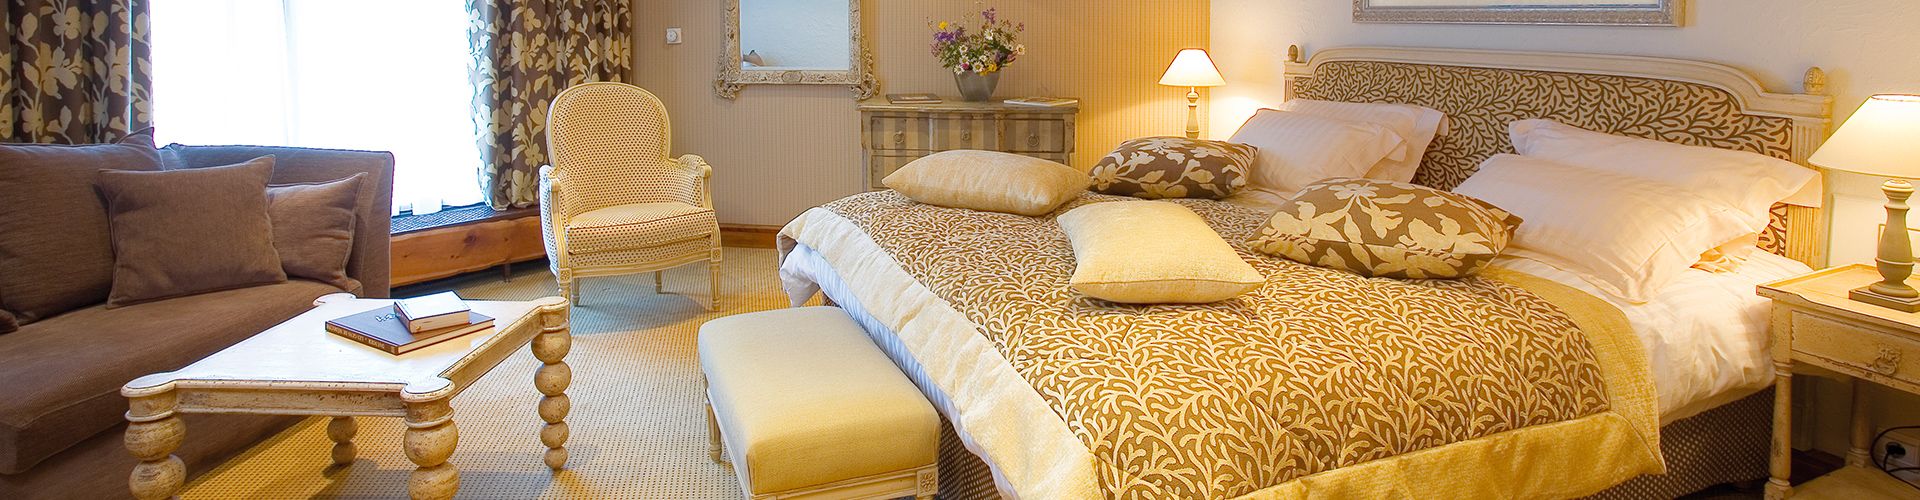 lit double et espace détente avec canapé-hotel courchevel 1850